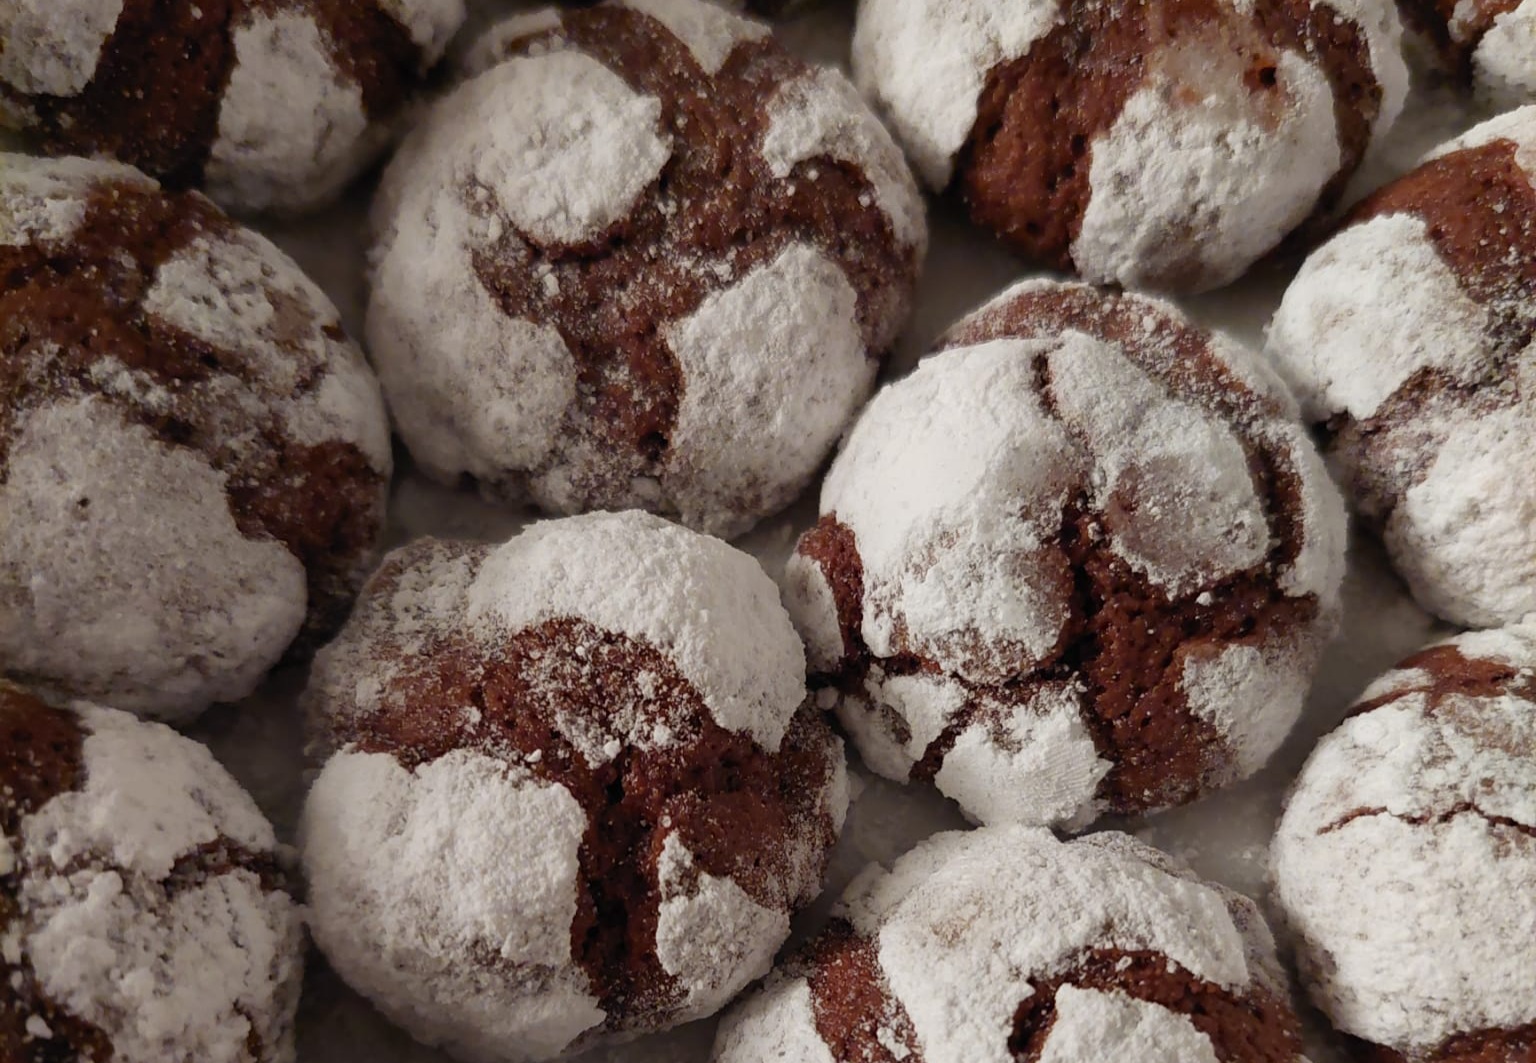 Ova slika prikazuje skupinu čokoladnih kolačića posutih šećerom u prahu. Kolačići su smeđi s bijelim šećerom koji se drži za pukotine na površini, stvarajući kontrastnu i apetitnu sliku.